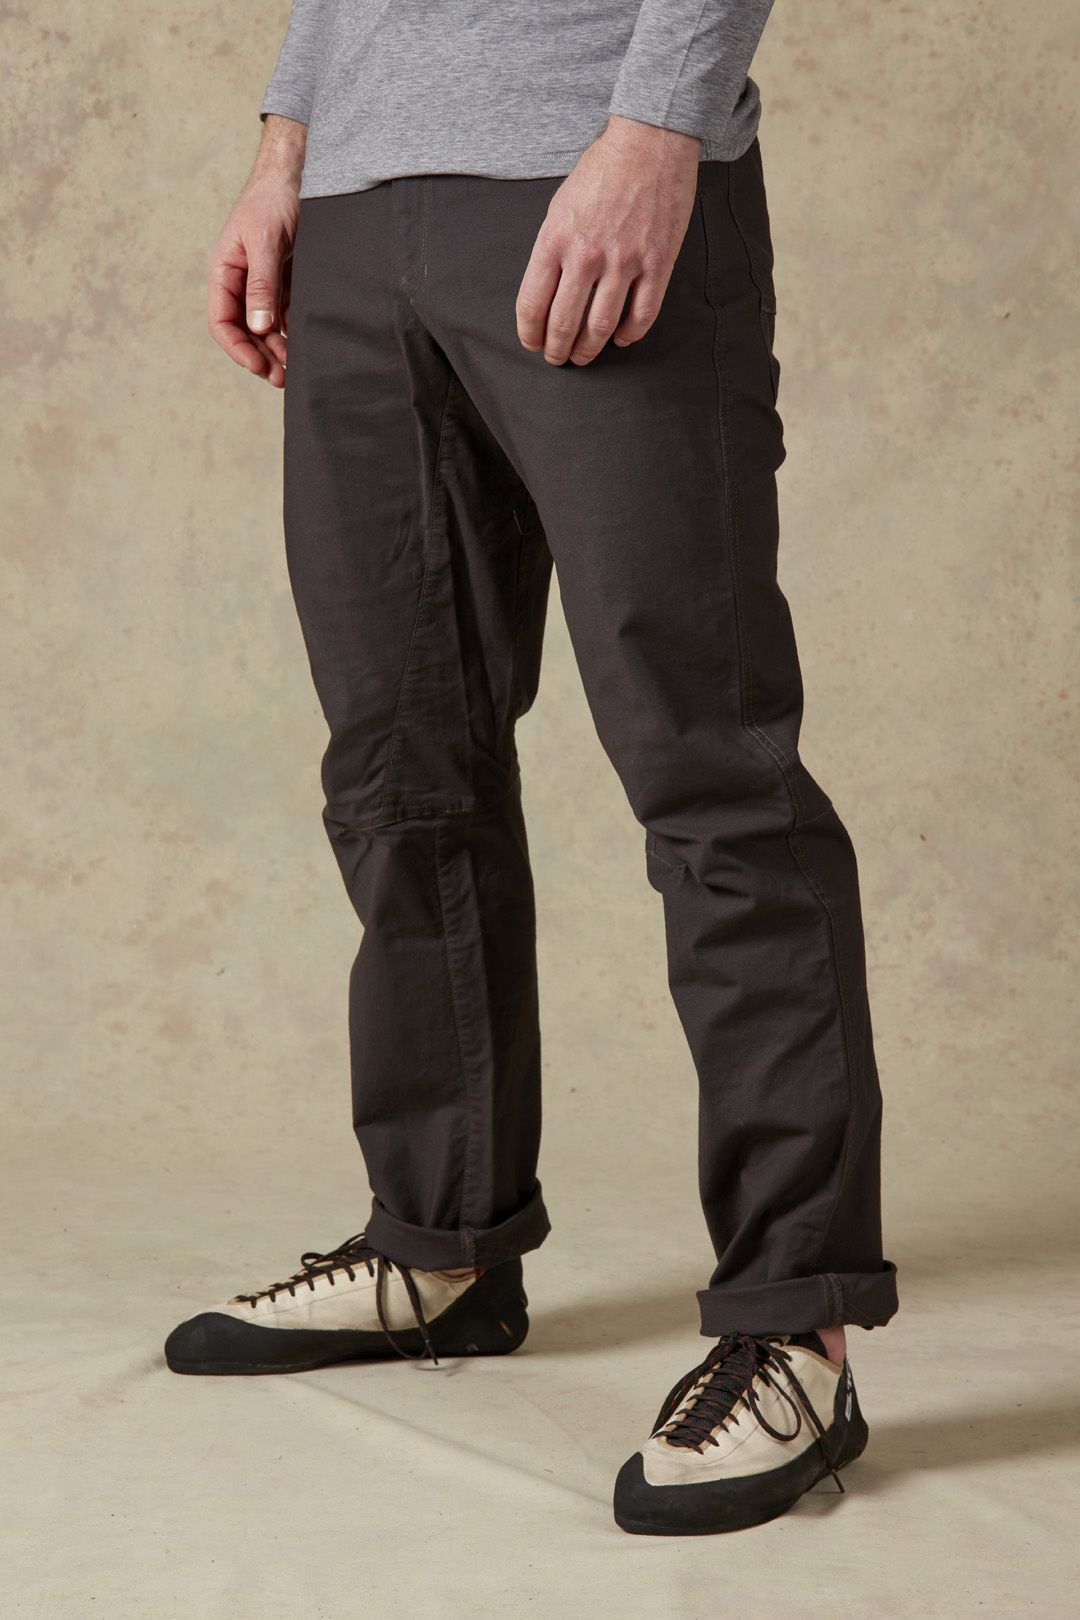 Rab Radius Pants - Climbing trousers - Men's